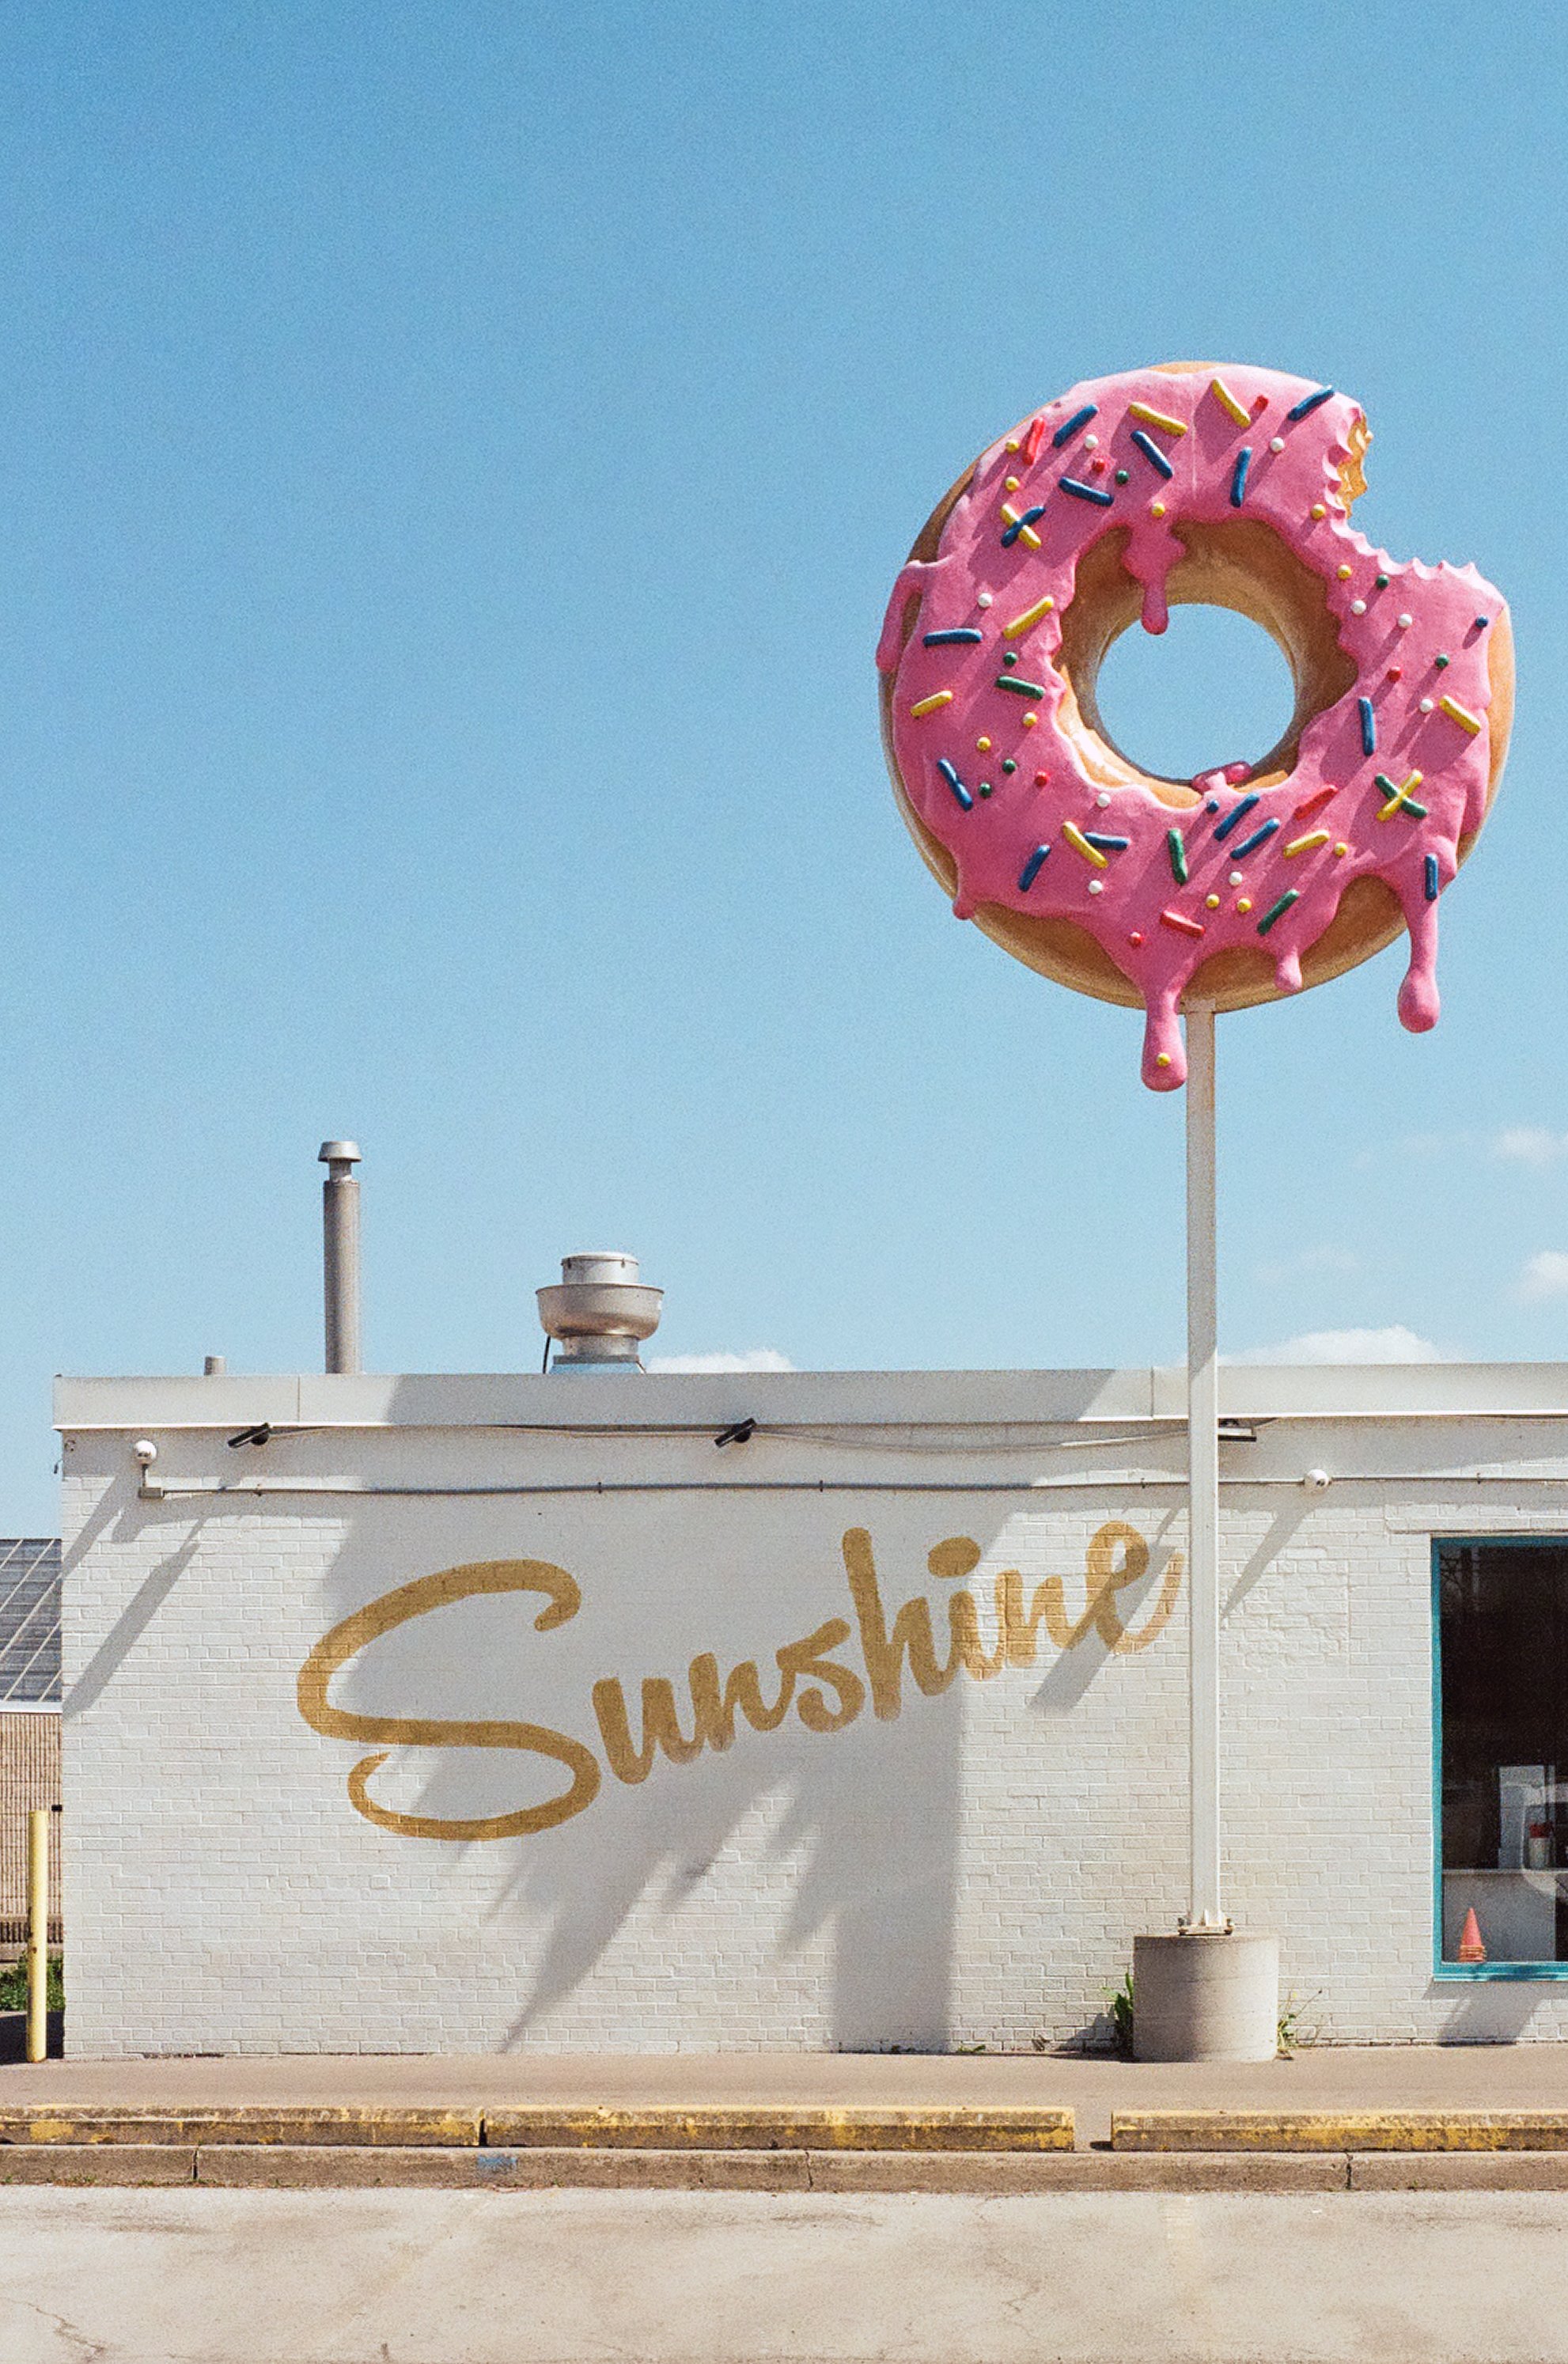  Doughnut shop under the midday sun in Ontario, Canada 